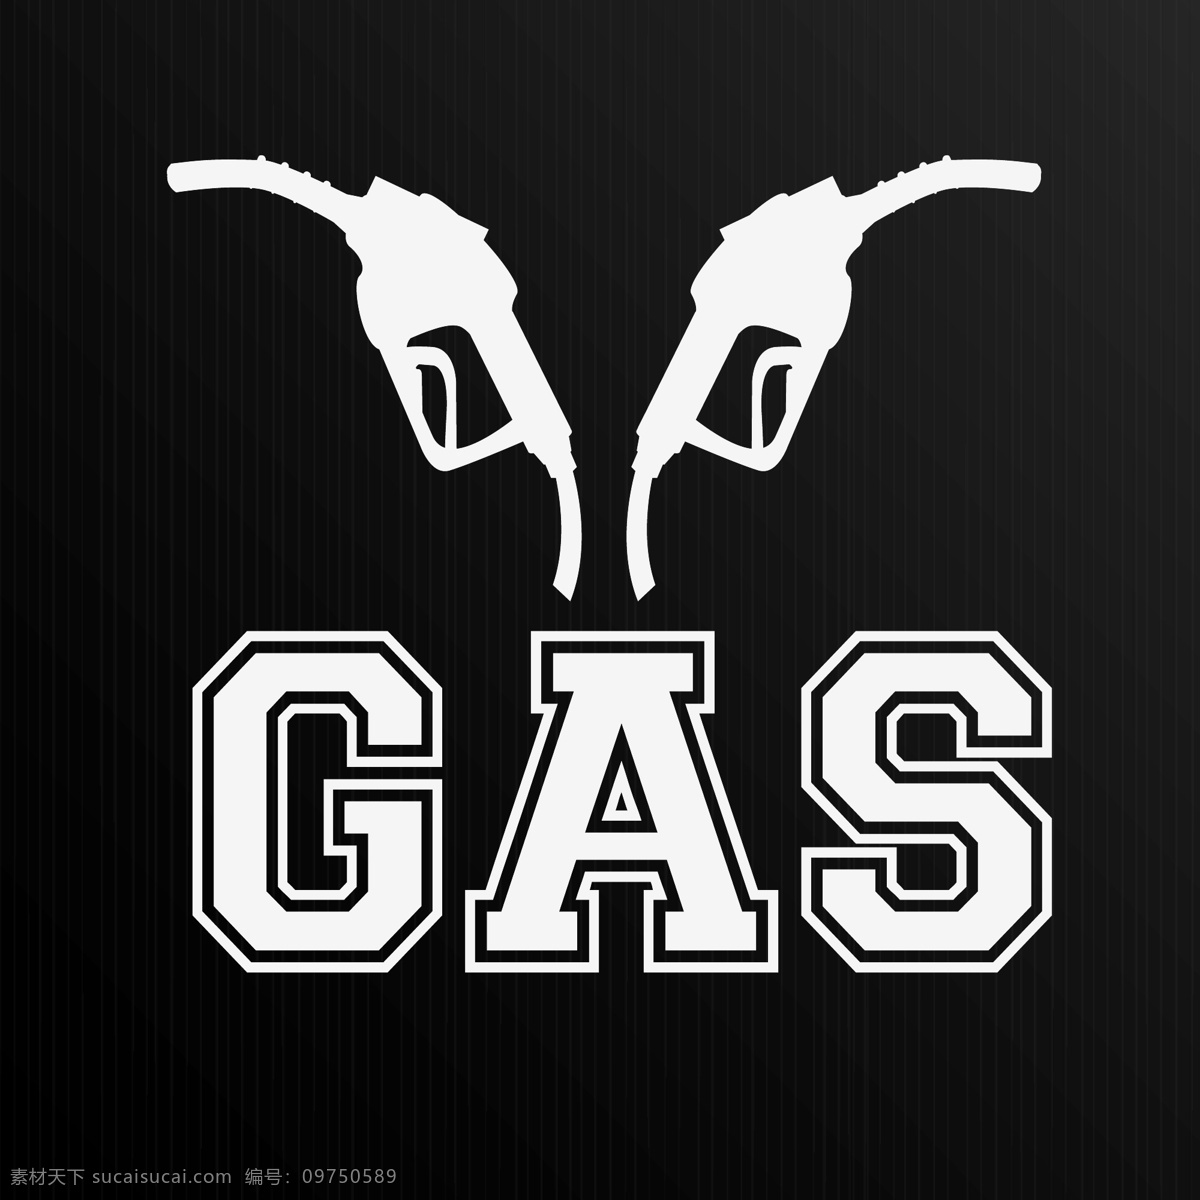 天然气gas 液化气 gas 天然气 燃气 煤气 其他图标 标志图标